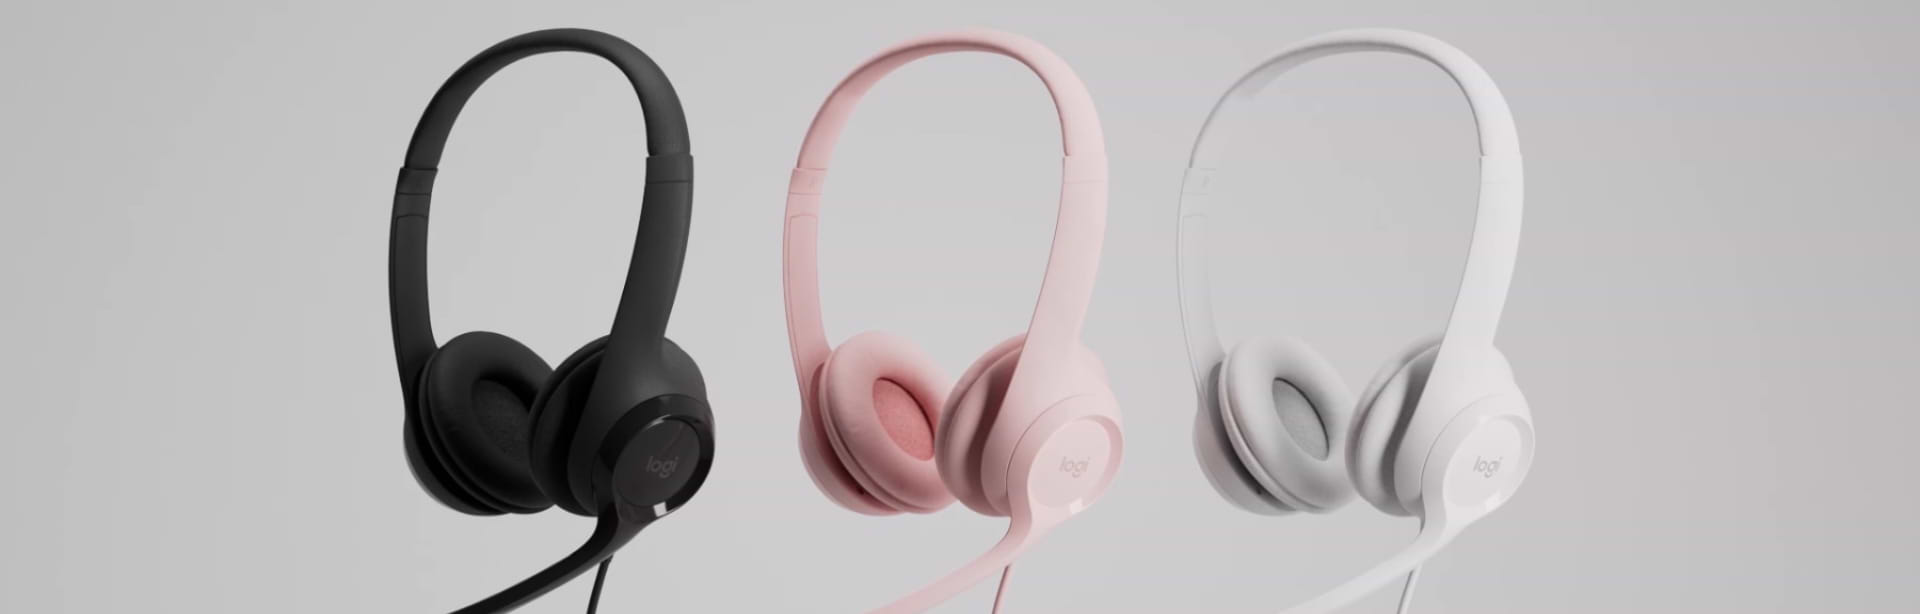 אוזניות למחשב H390 USB - צבע לבן שנתיים אחריות ע"י היבואן הרשמי